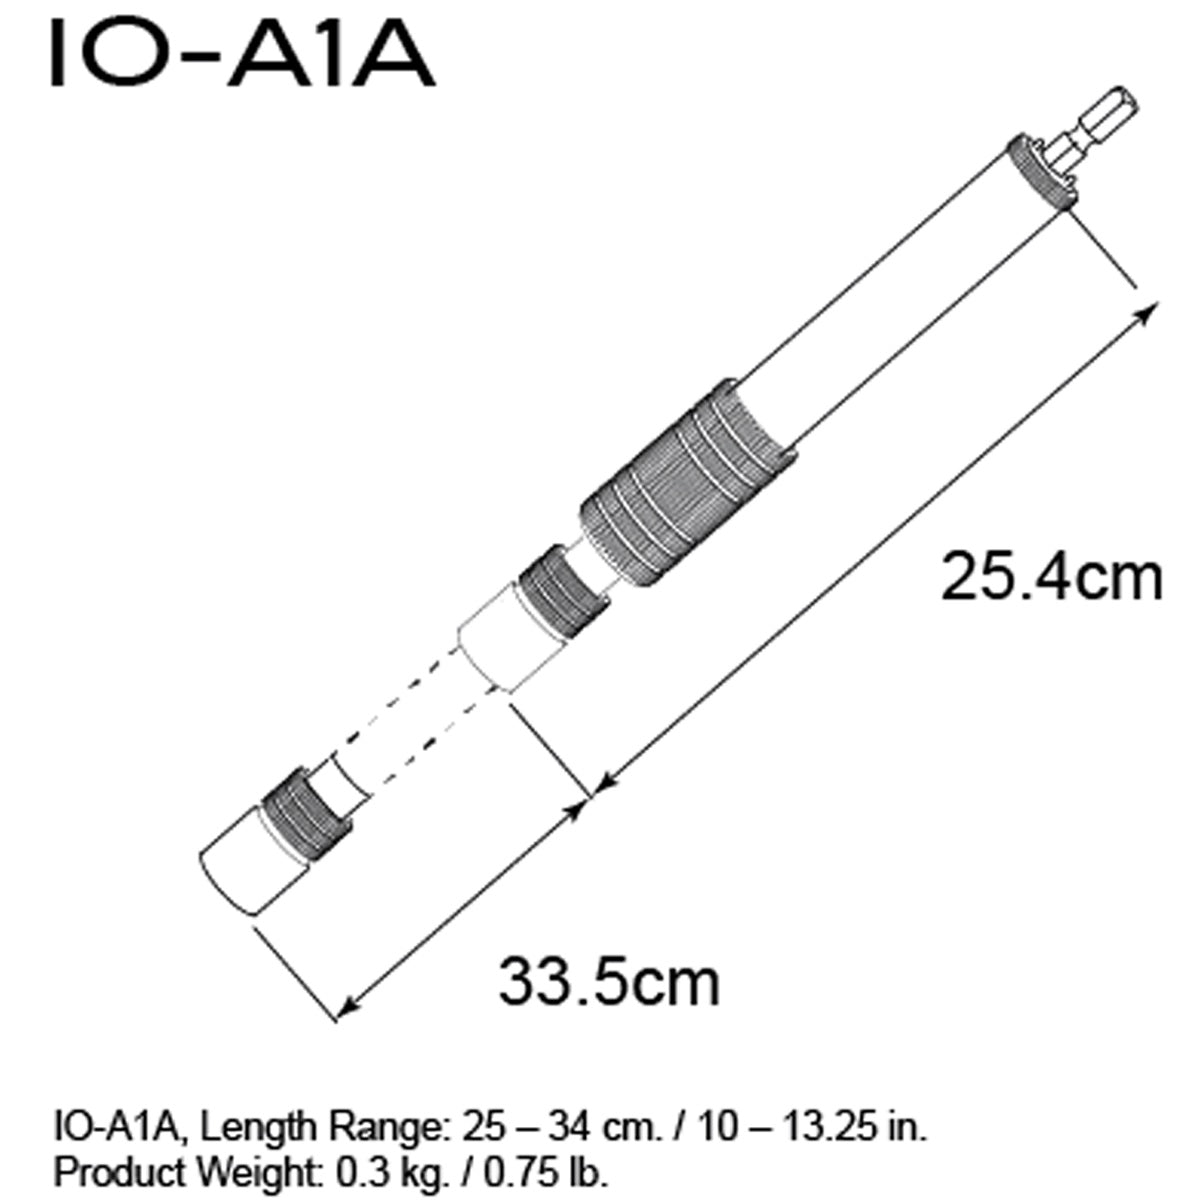 Triad Orbit IO-A1A, IO-Equipped Short Telescopic Arm, Aluminium